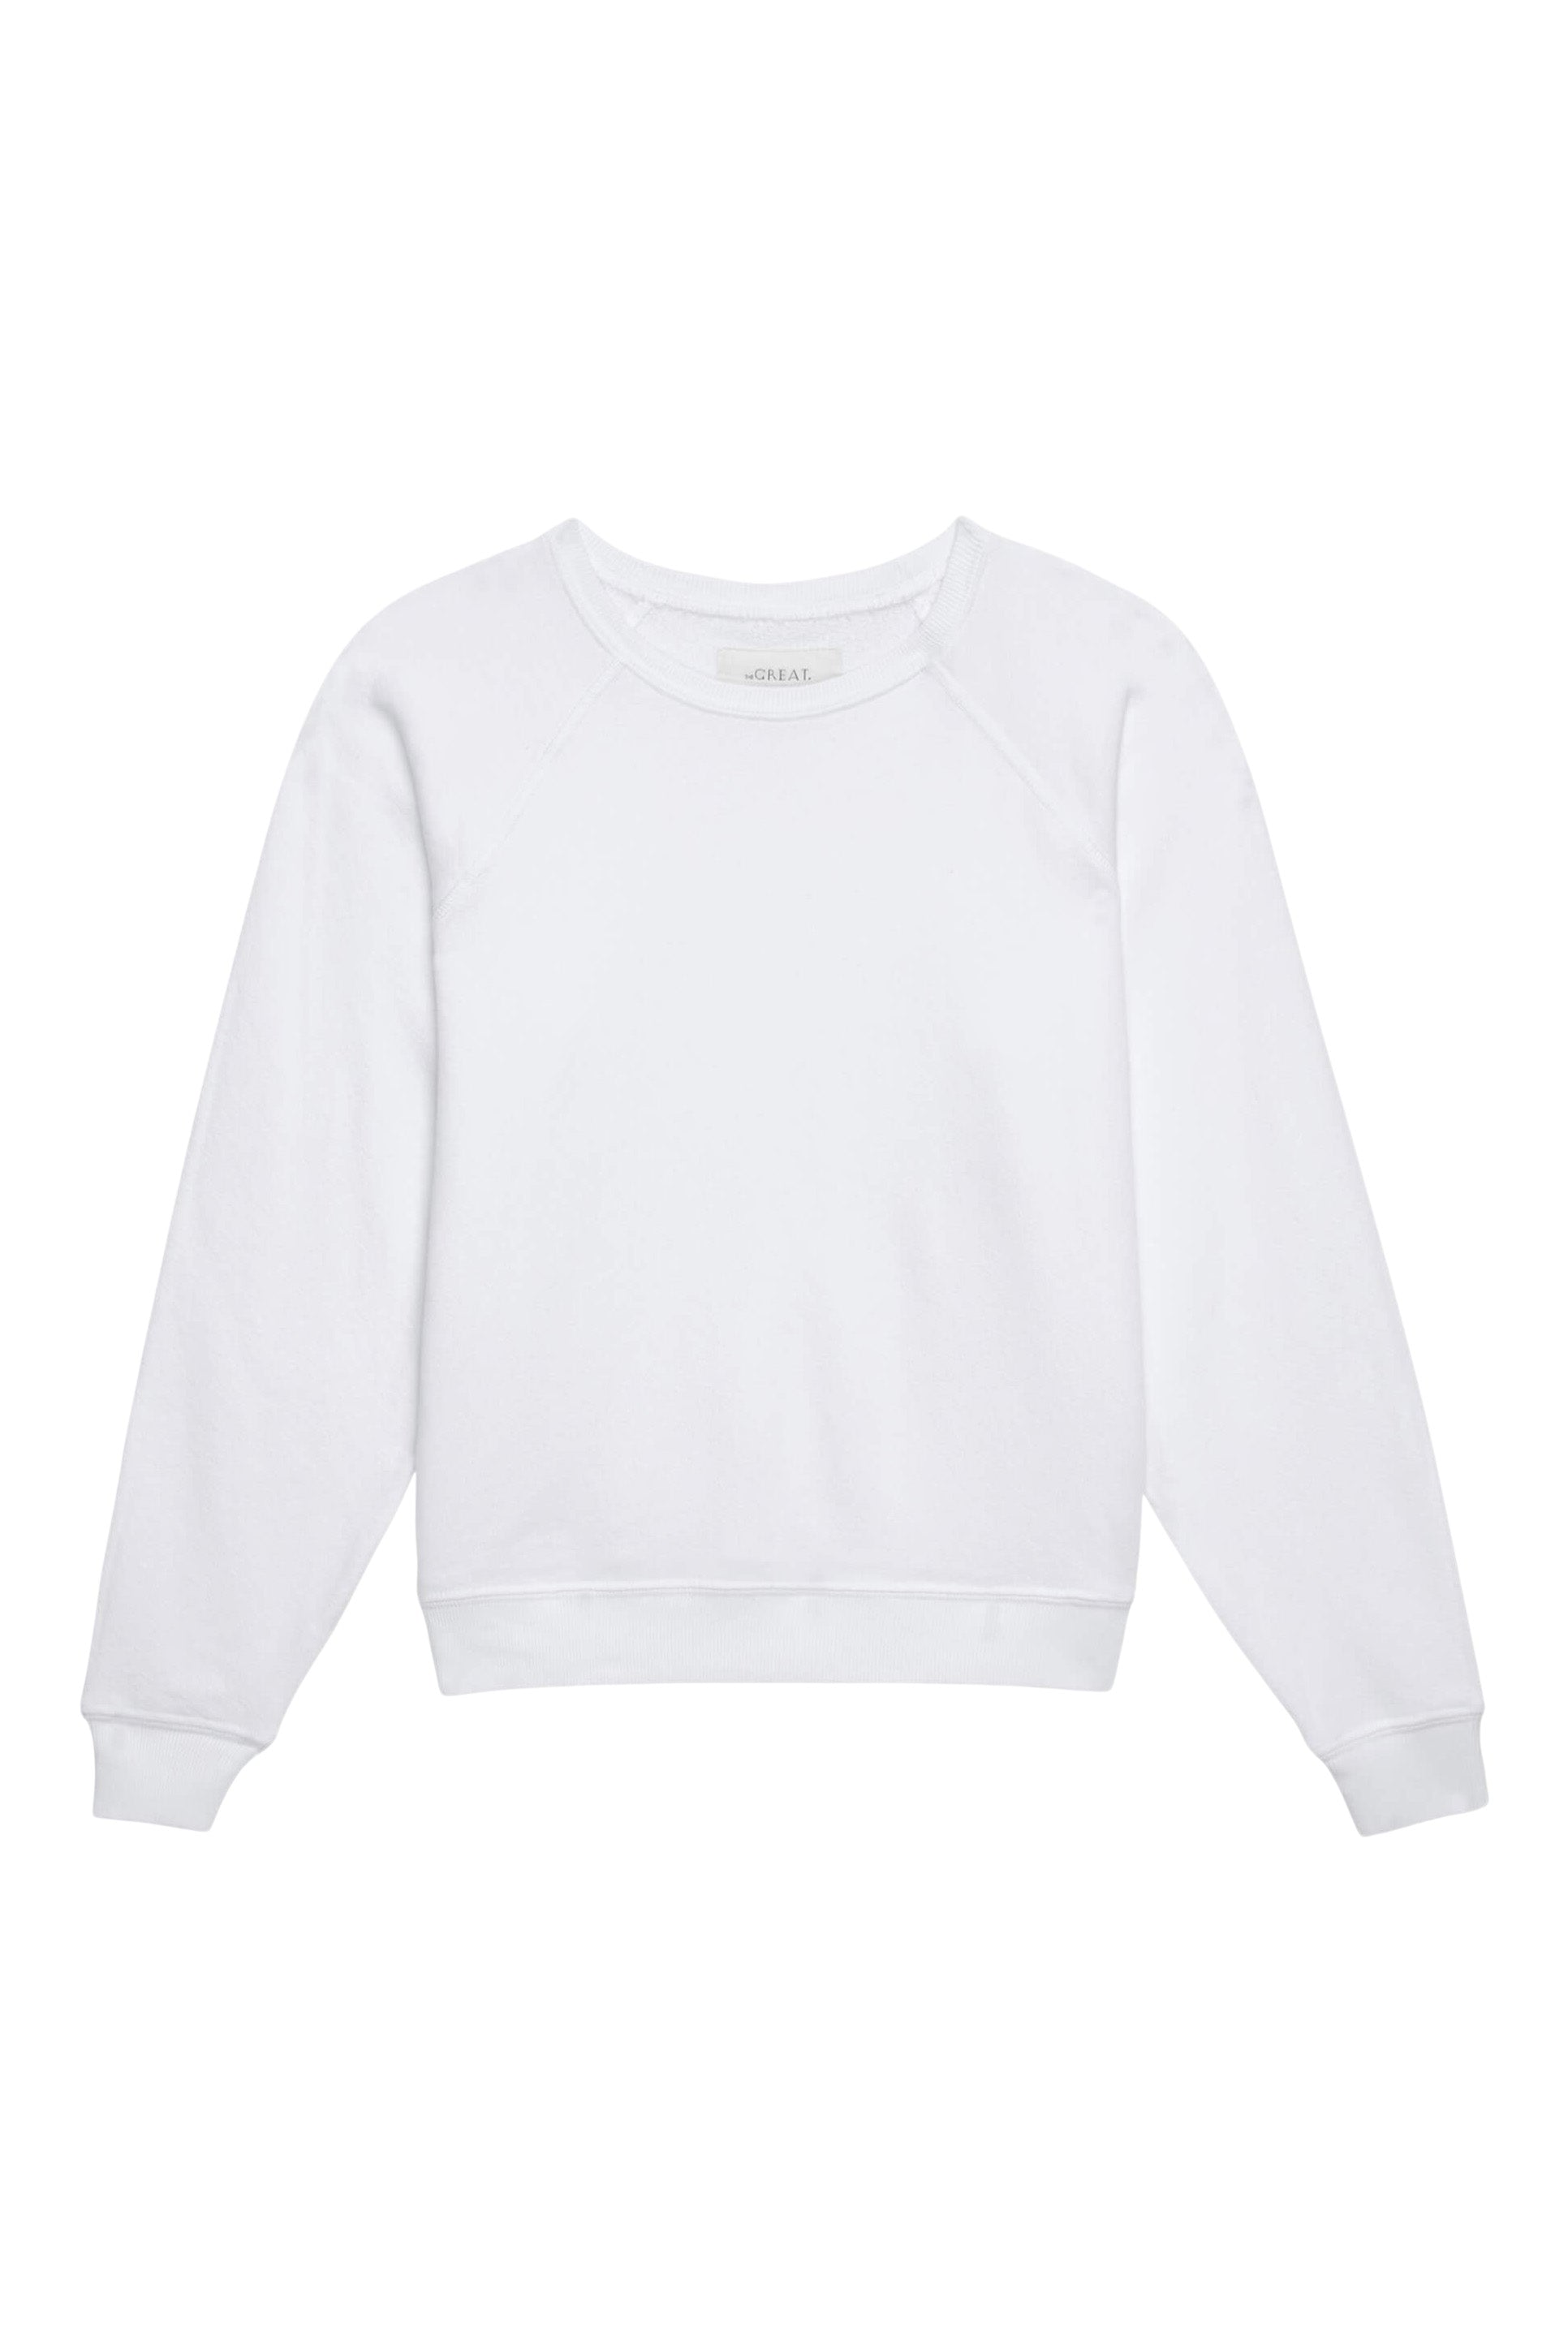 The Great Shrunken Sweatshirt in True White